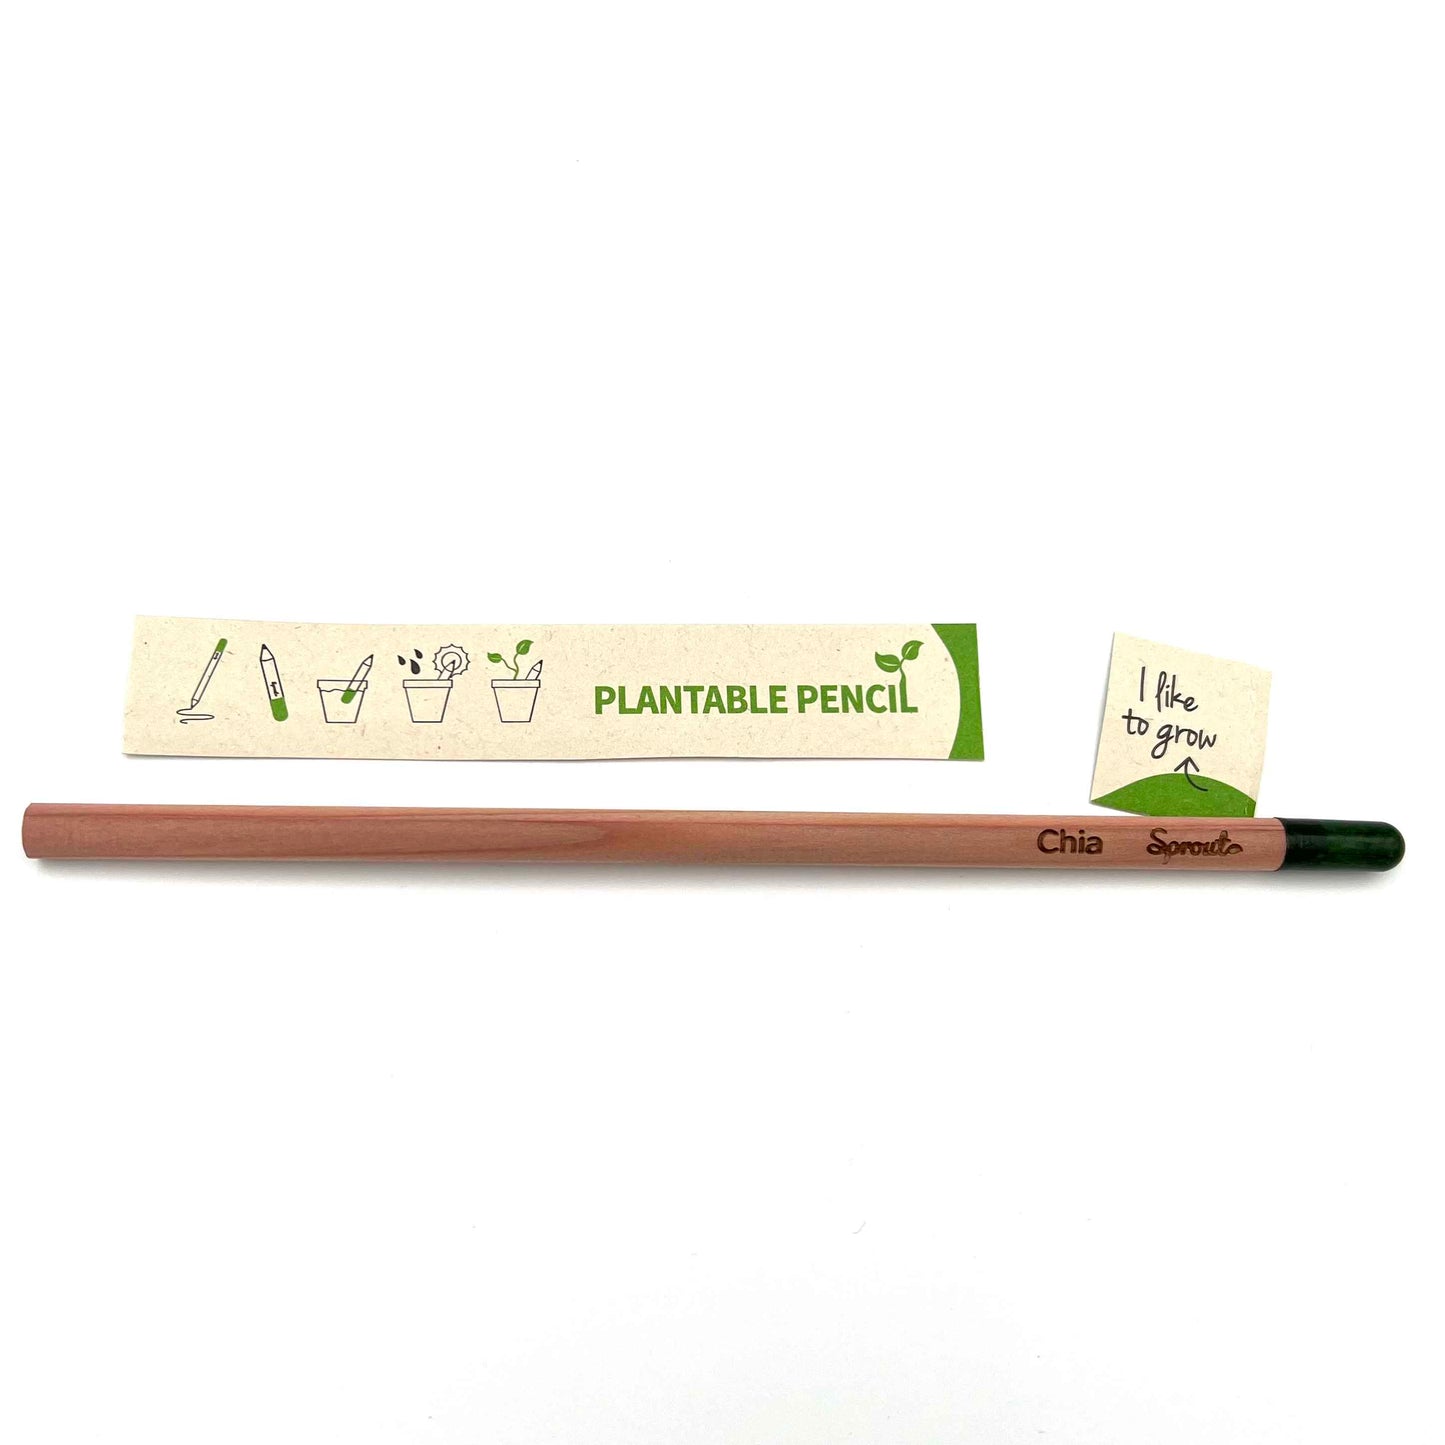 BLOOM YOUR MESSAGE Einpflanzbare Bleistifte mit Pflanzensamen | 1 Stück